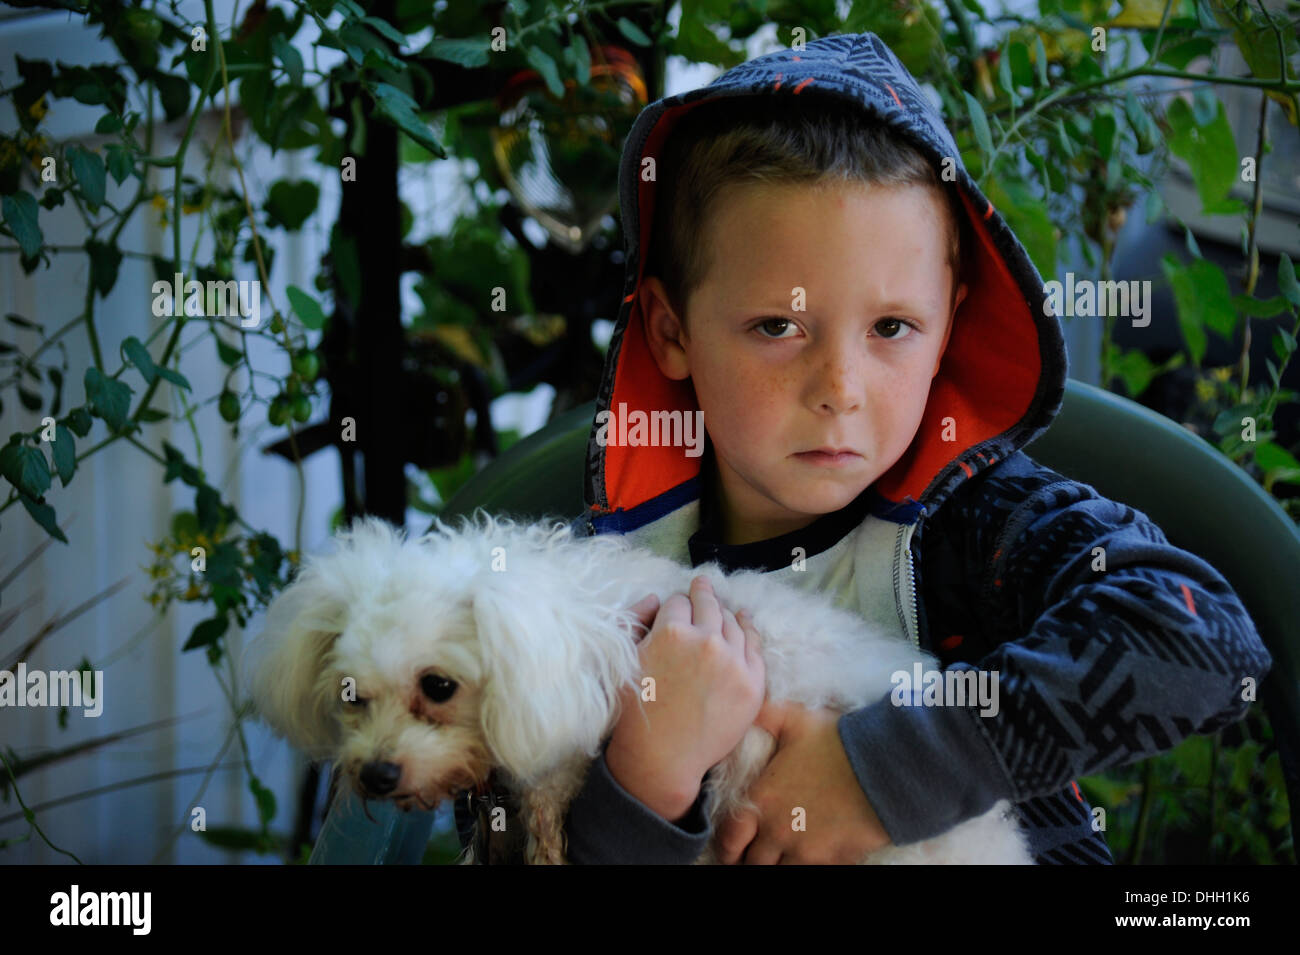 Little sad boy holding pet dog Stock Photo